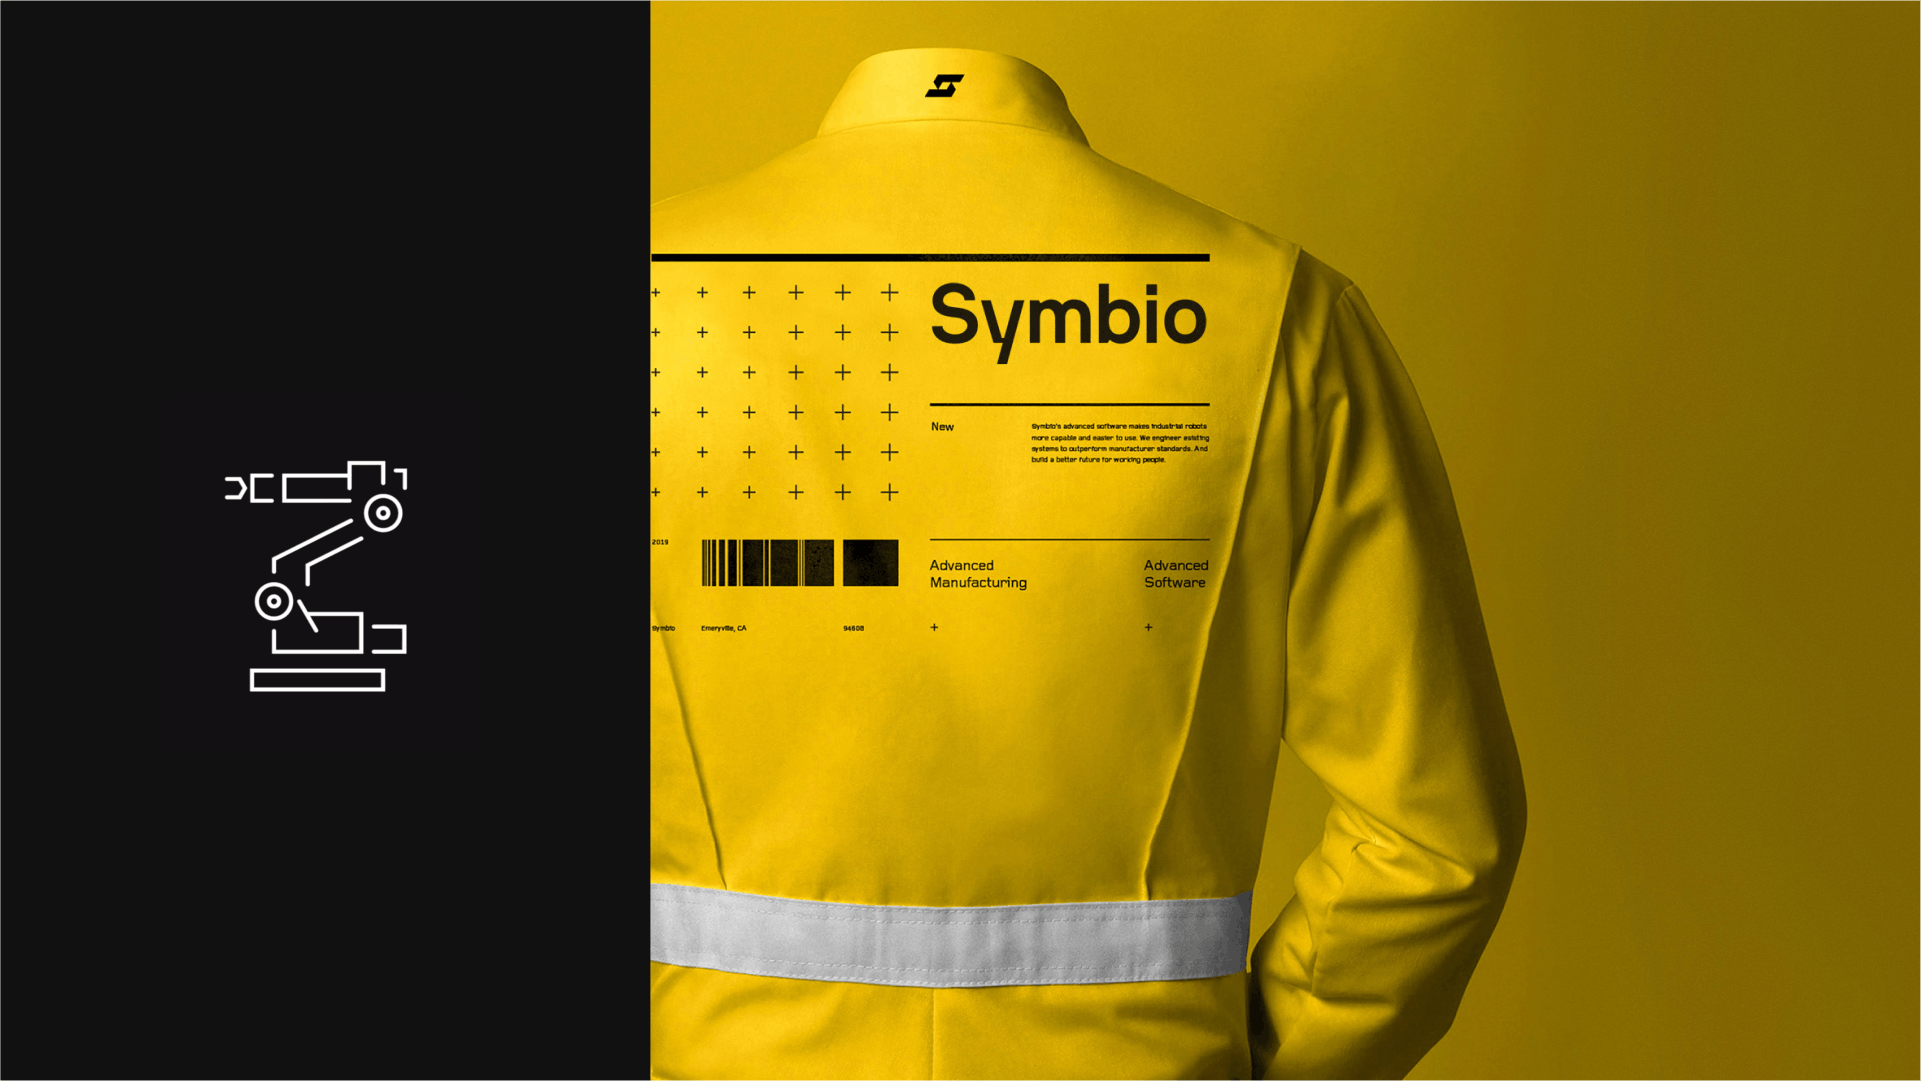 Symbio logo on a jacket